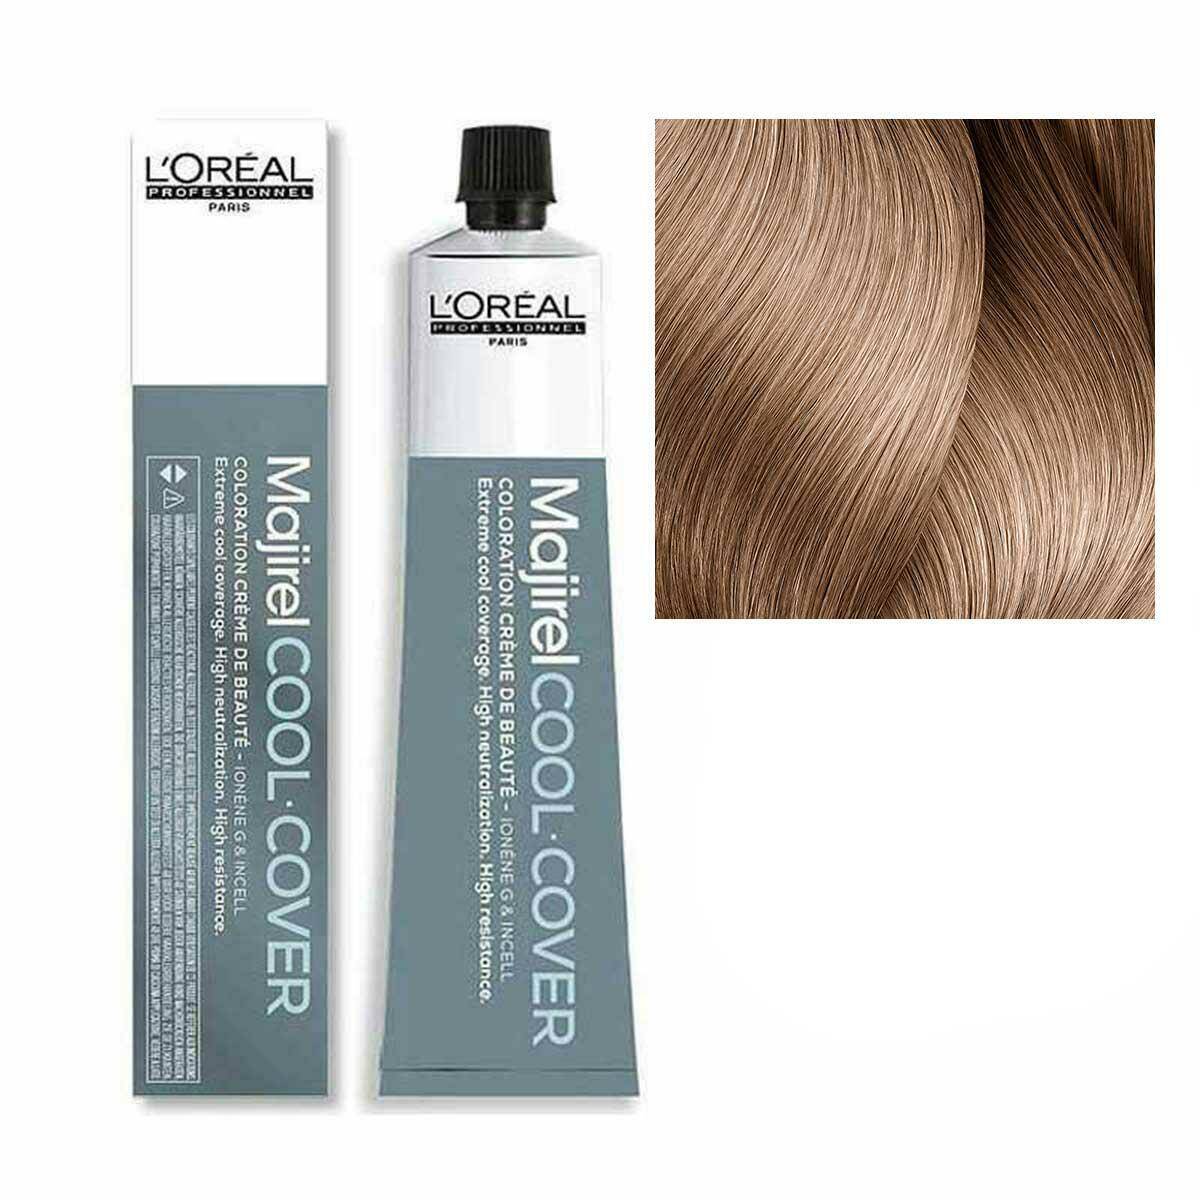 Loreal Majirel Cool Cover Farba do włosów - 9.82 Bardzo jasny blond mokka opalizujący 50ml